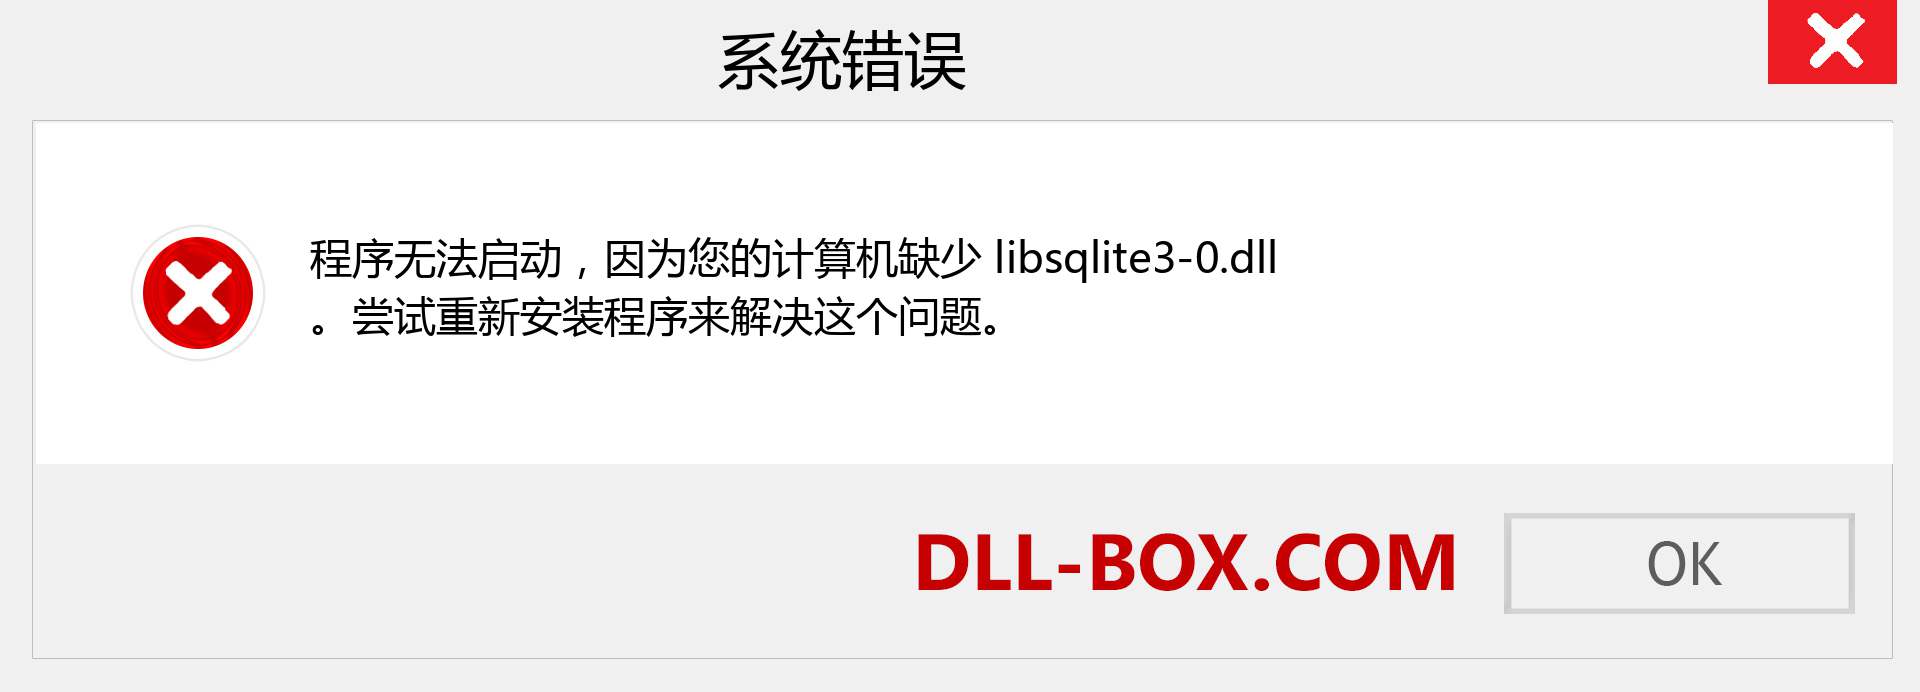 libsqlite3-0.dll 文件丢失？。 适用于 Windows 7、8、10 的下载 - 修复 Windows、照片、图像上的 libsqlite3-0 dll 丢失错误